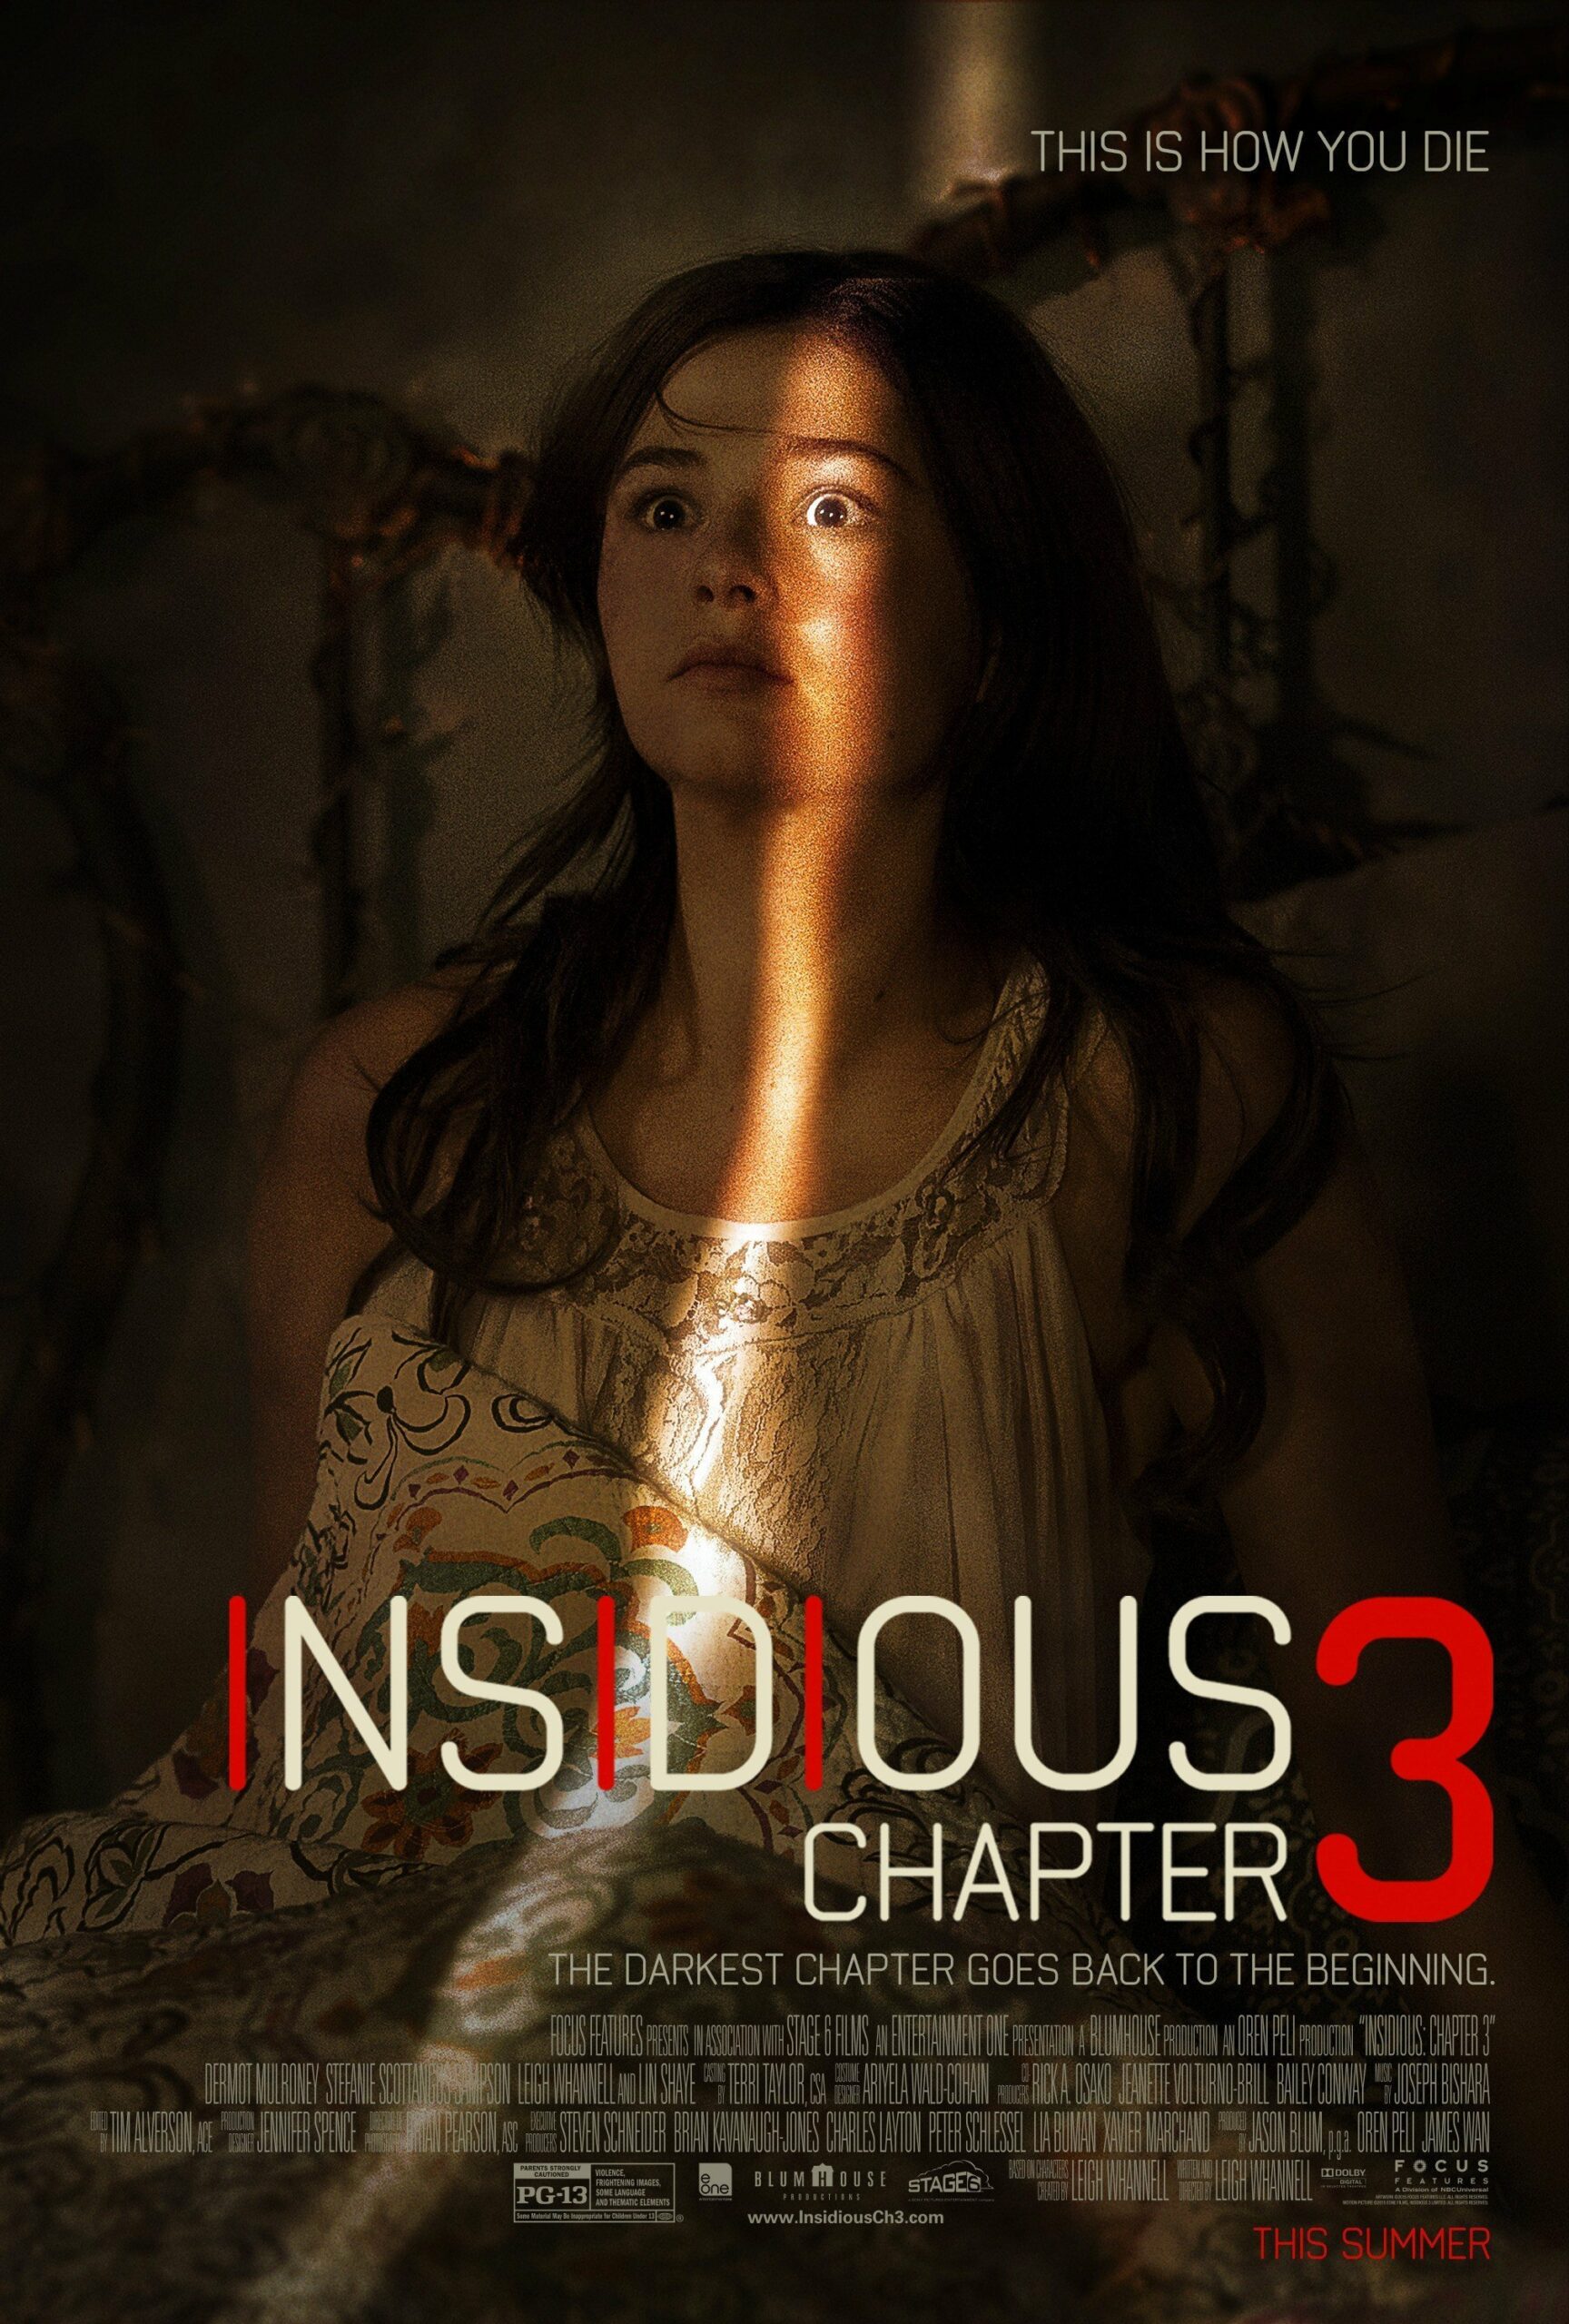 Poster d'Insidious: Chapitre 3 avec Stefanie Scott et la tagline "This is how you die"